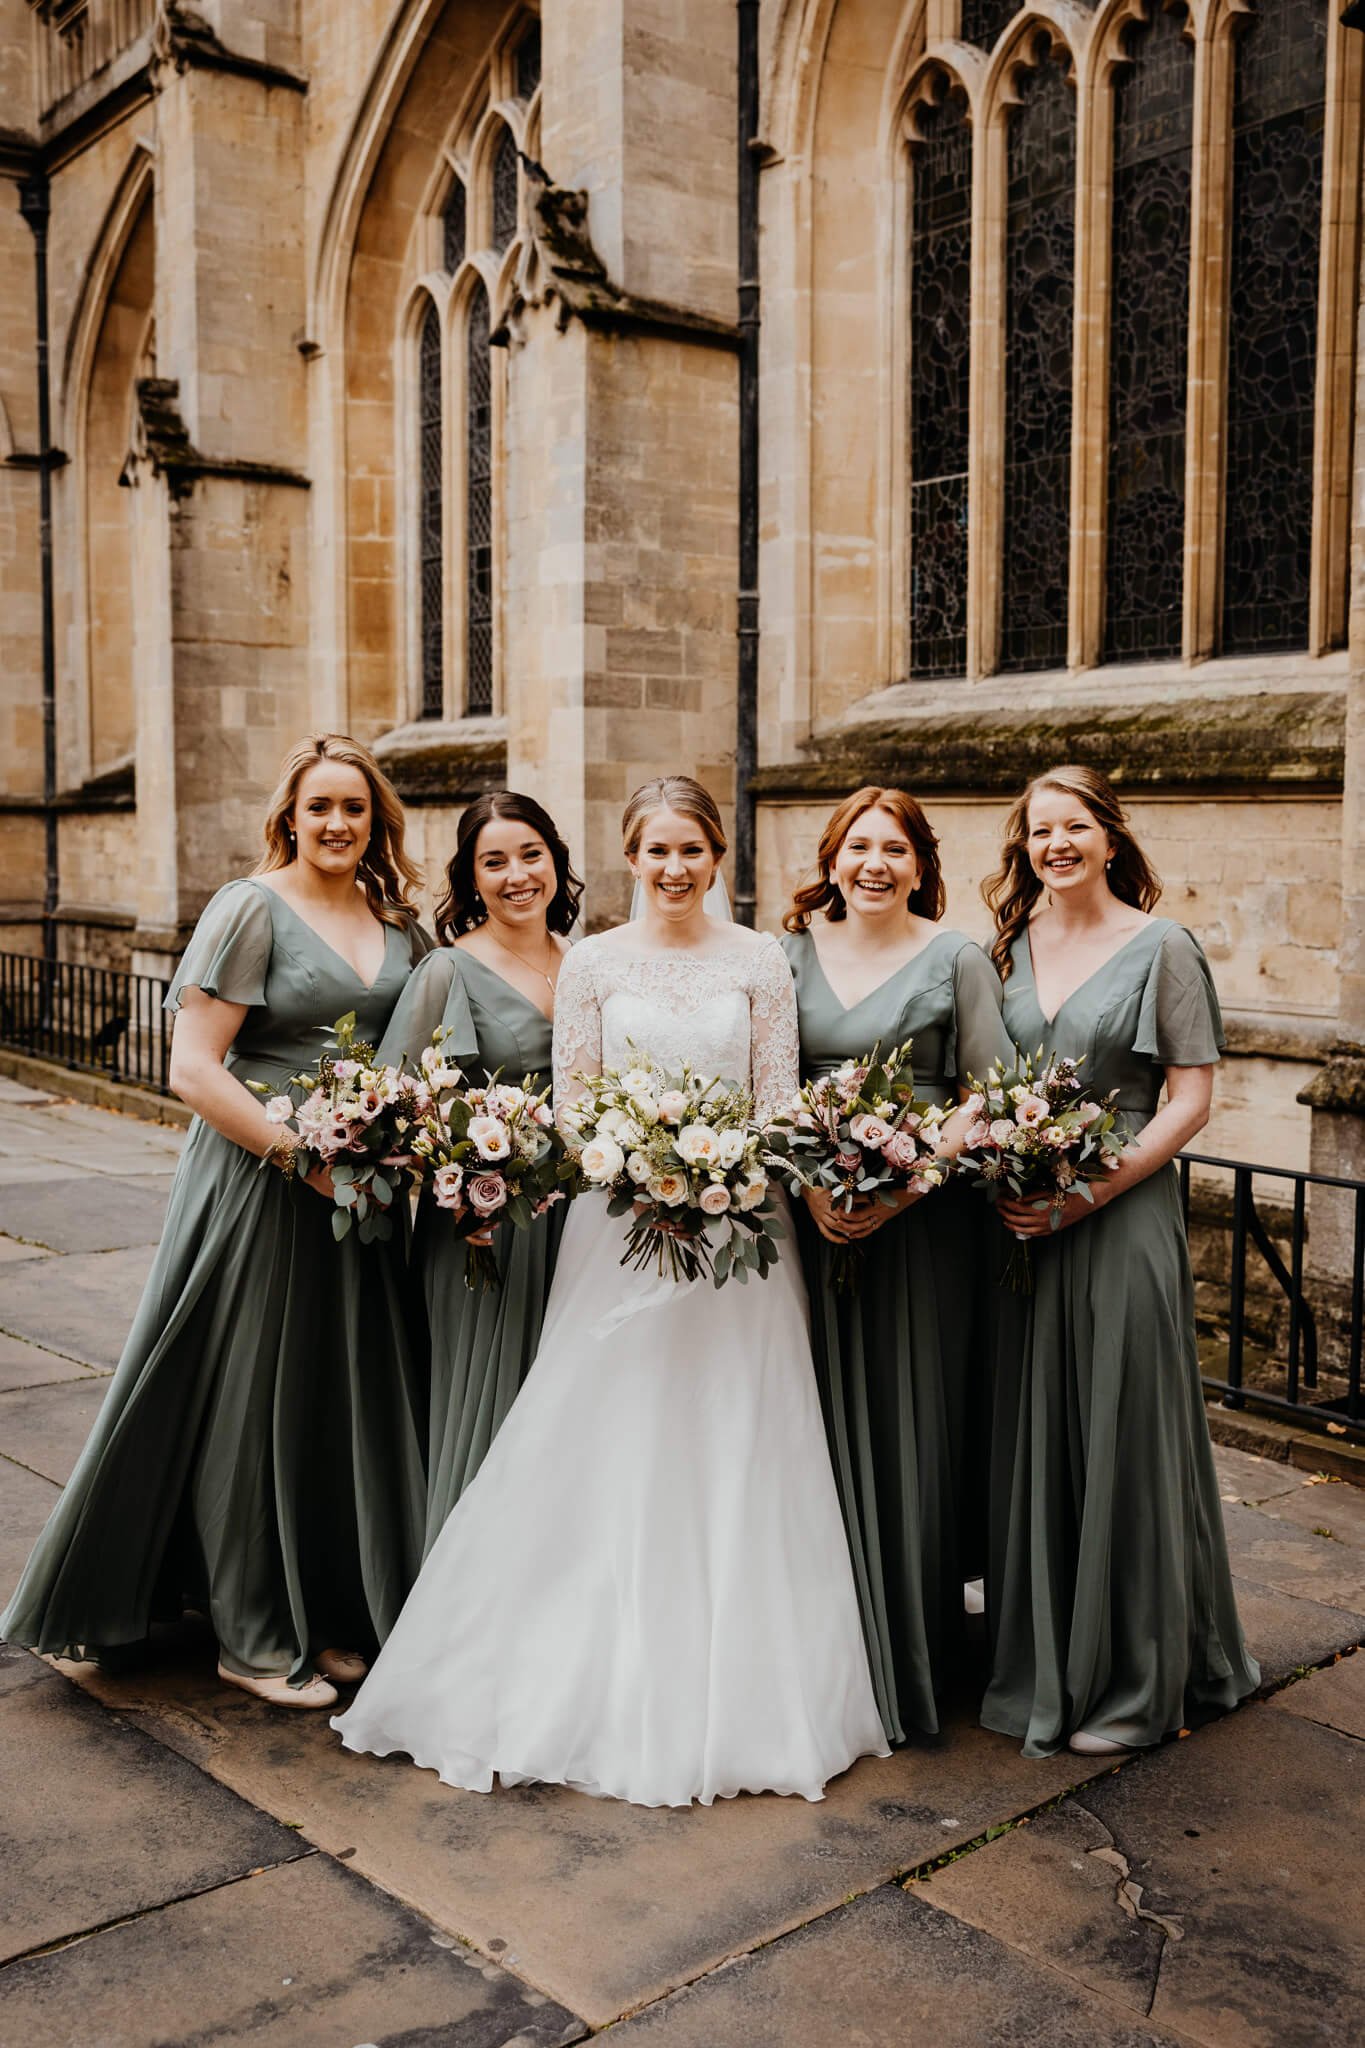 Beth-Shean-Wedding-bride-and-bridesmaids-3.jpg